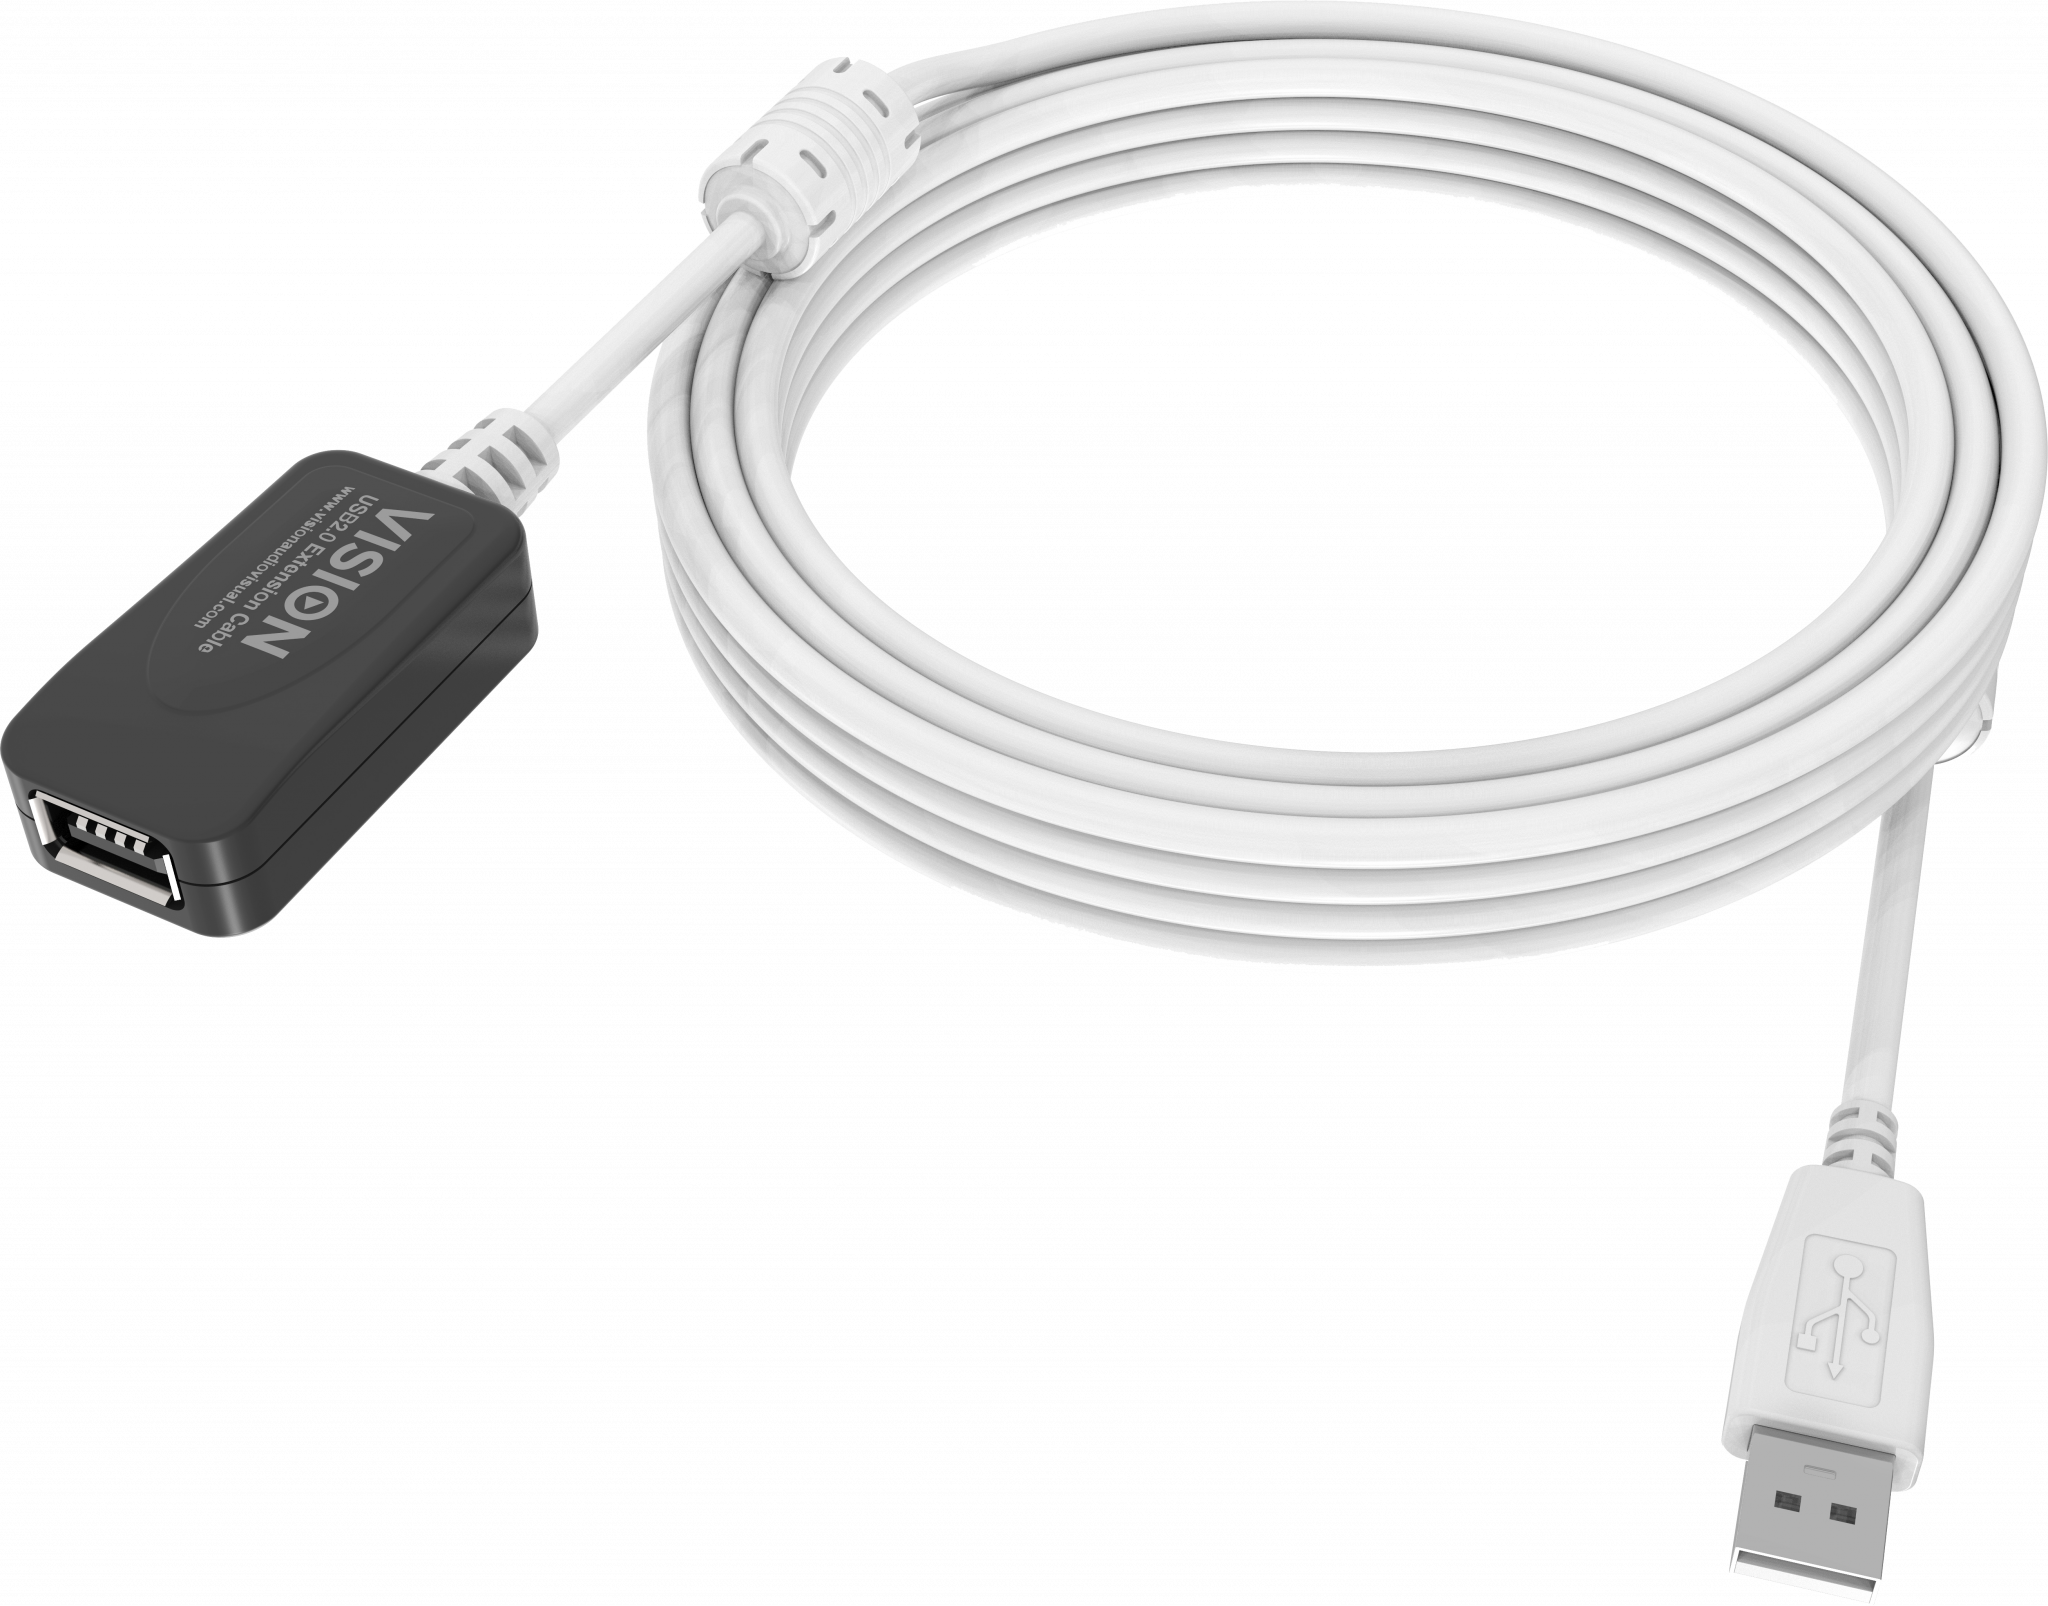 An image showing Câble de rallonge USB 2.0 blanc 5 m (16 pi) avec booster actif